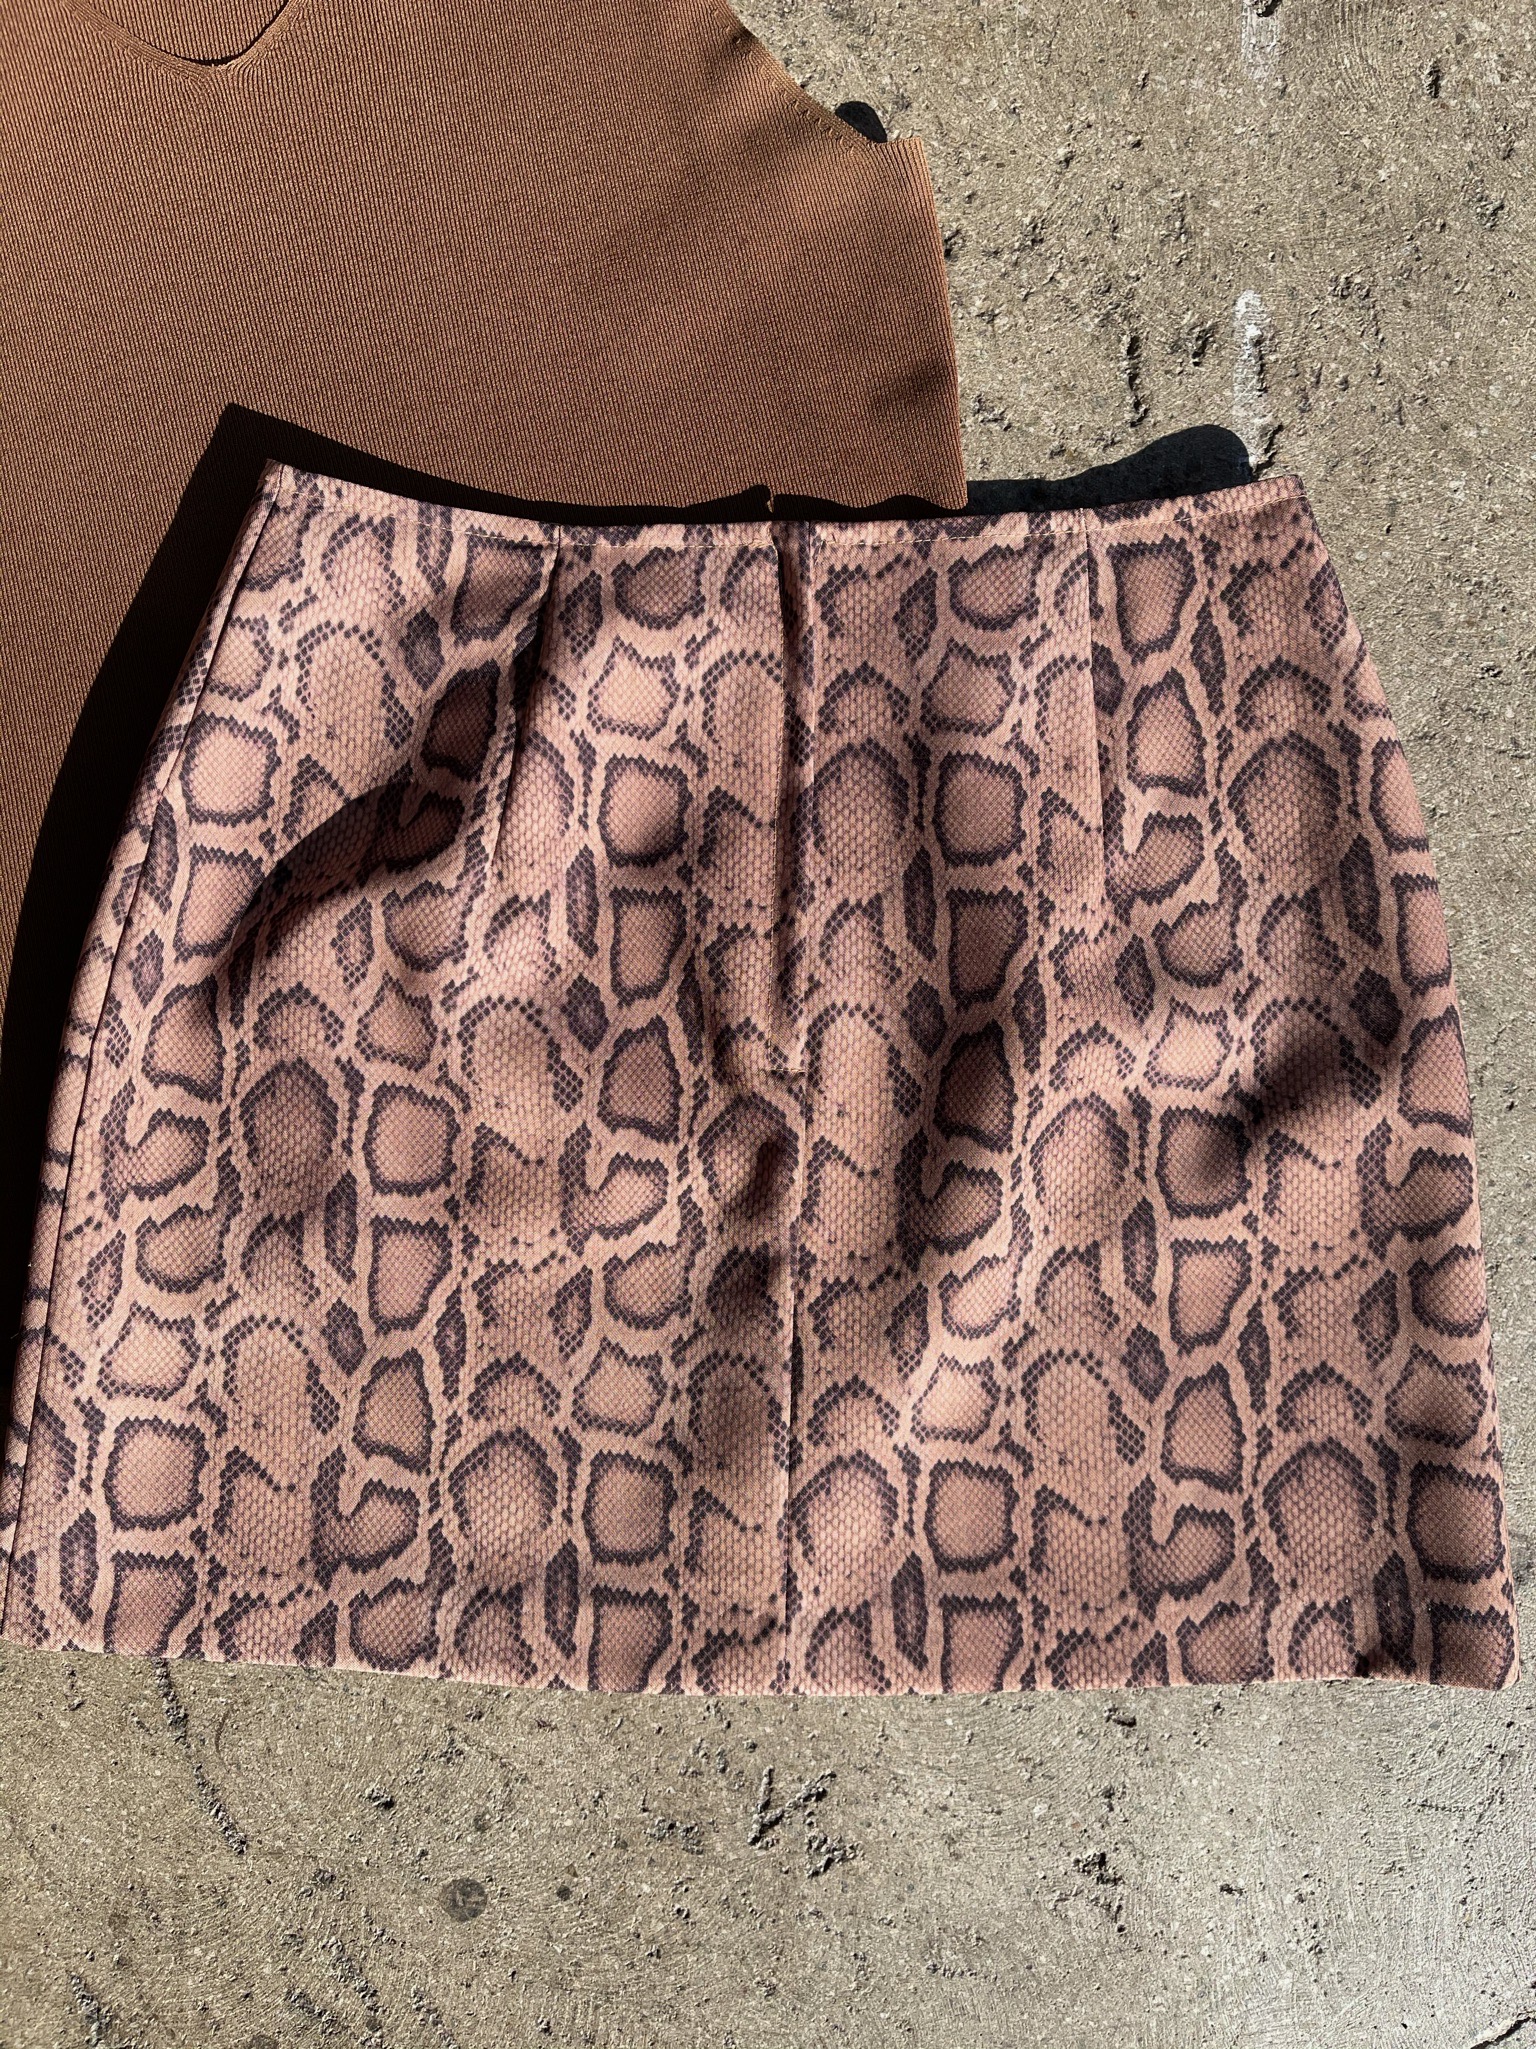 90s snakeskin skirt